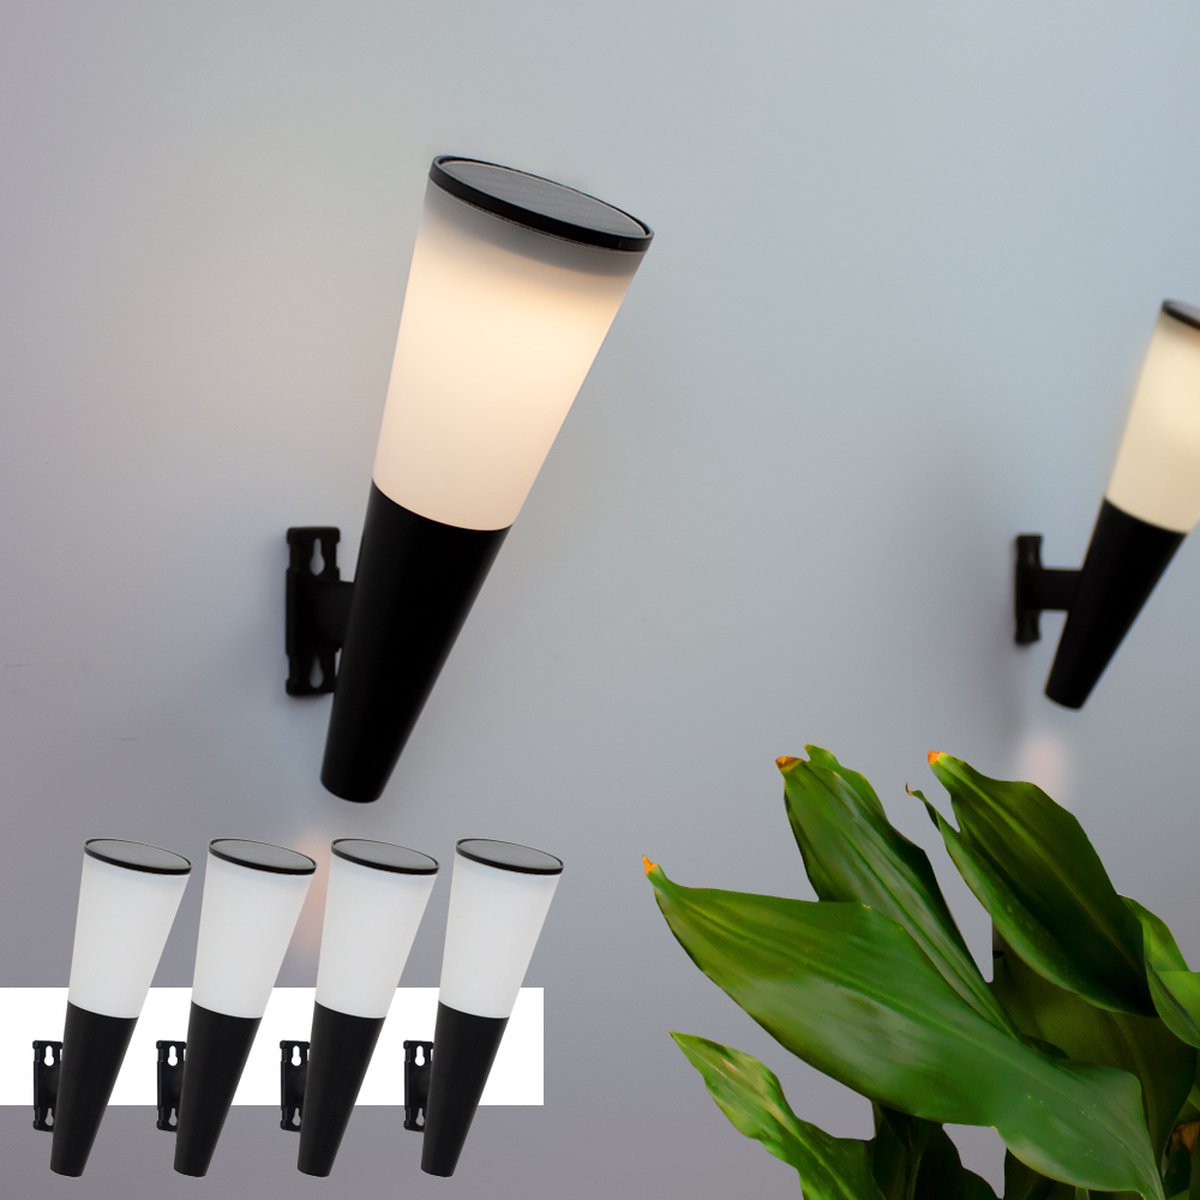 Solar wandlamp 'Torch' - Voordeelset van 4 stuks - Buitenlamp op zonne-energie - Moderne wandlamp voor de schutting of gevel - Zwart